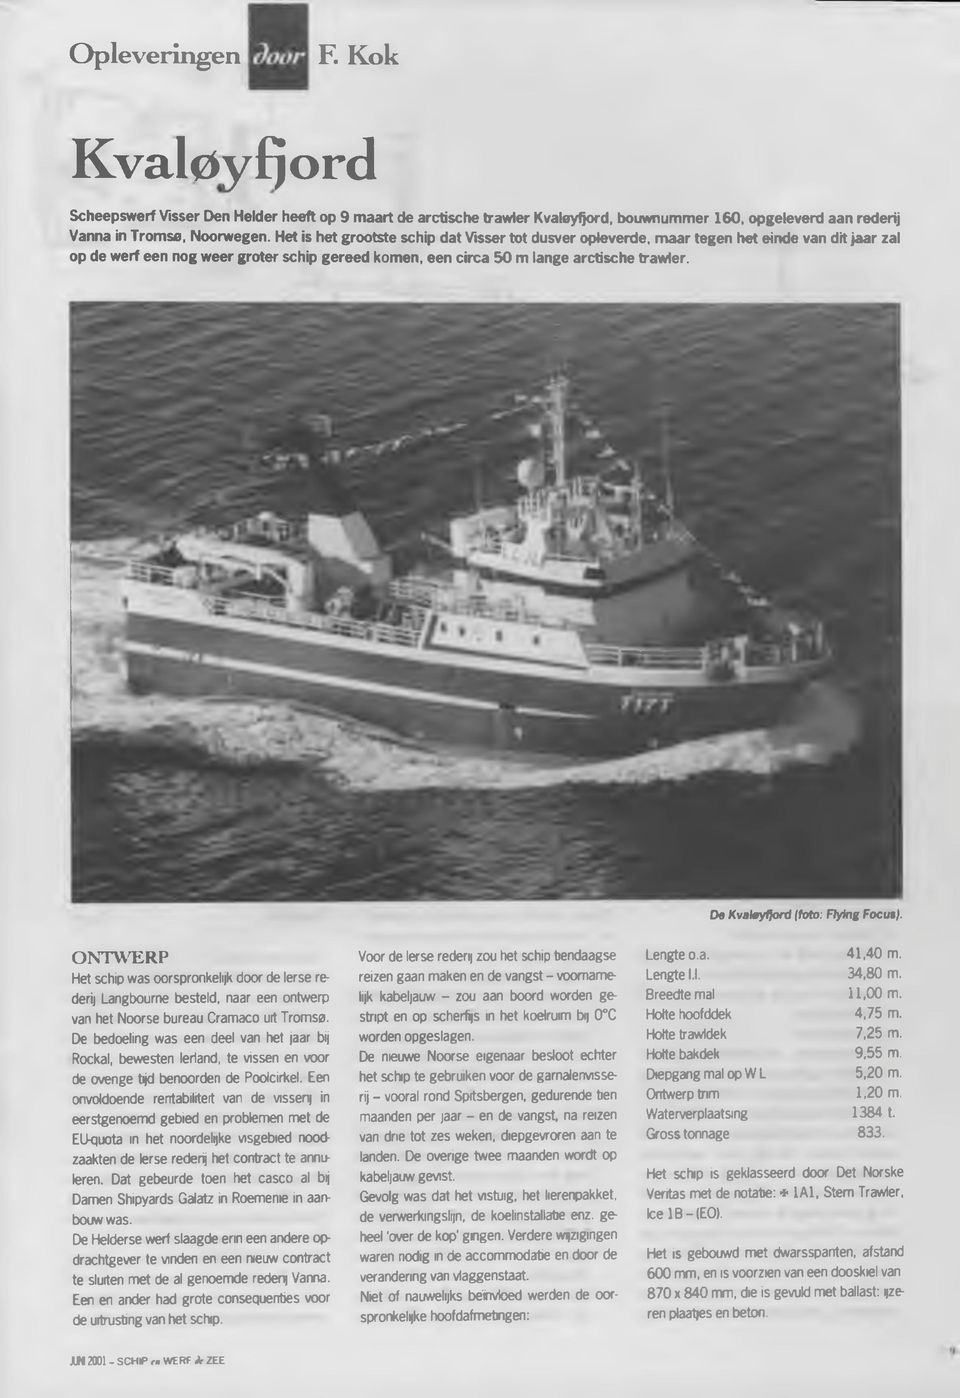 De Kvaloyfjord (toto: Flying Focus). O N T W E R P Het schip was oorspronkelijk door de Ierse rederij Langbourne besteld, naar een ontwerp van het Noorse bureau Cramaco uit Tromsa.